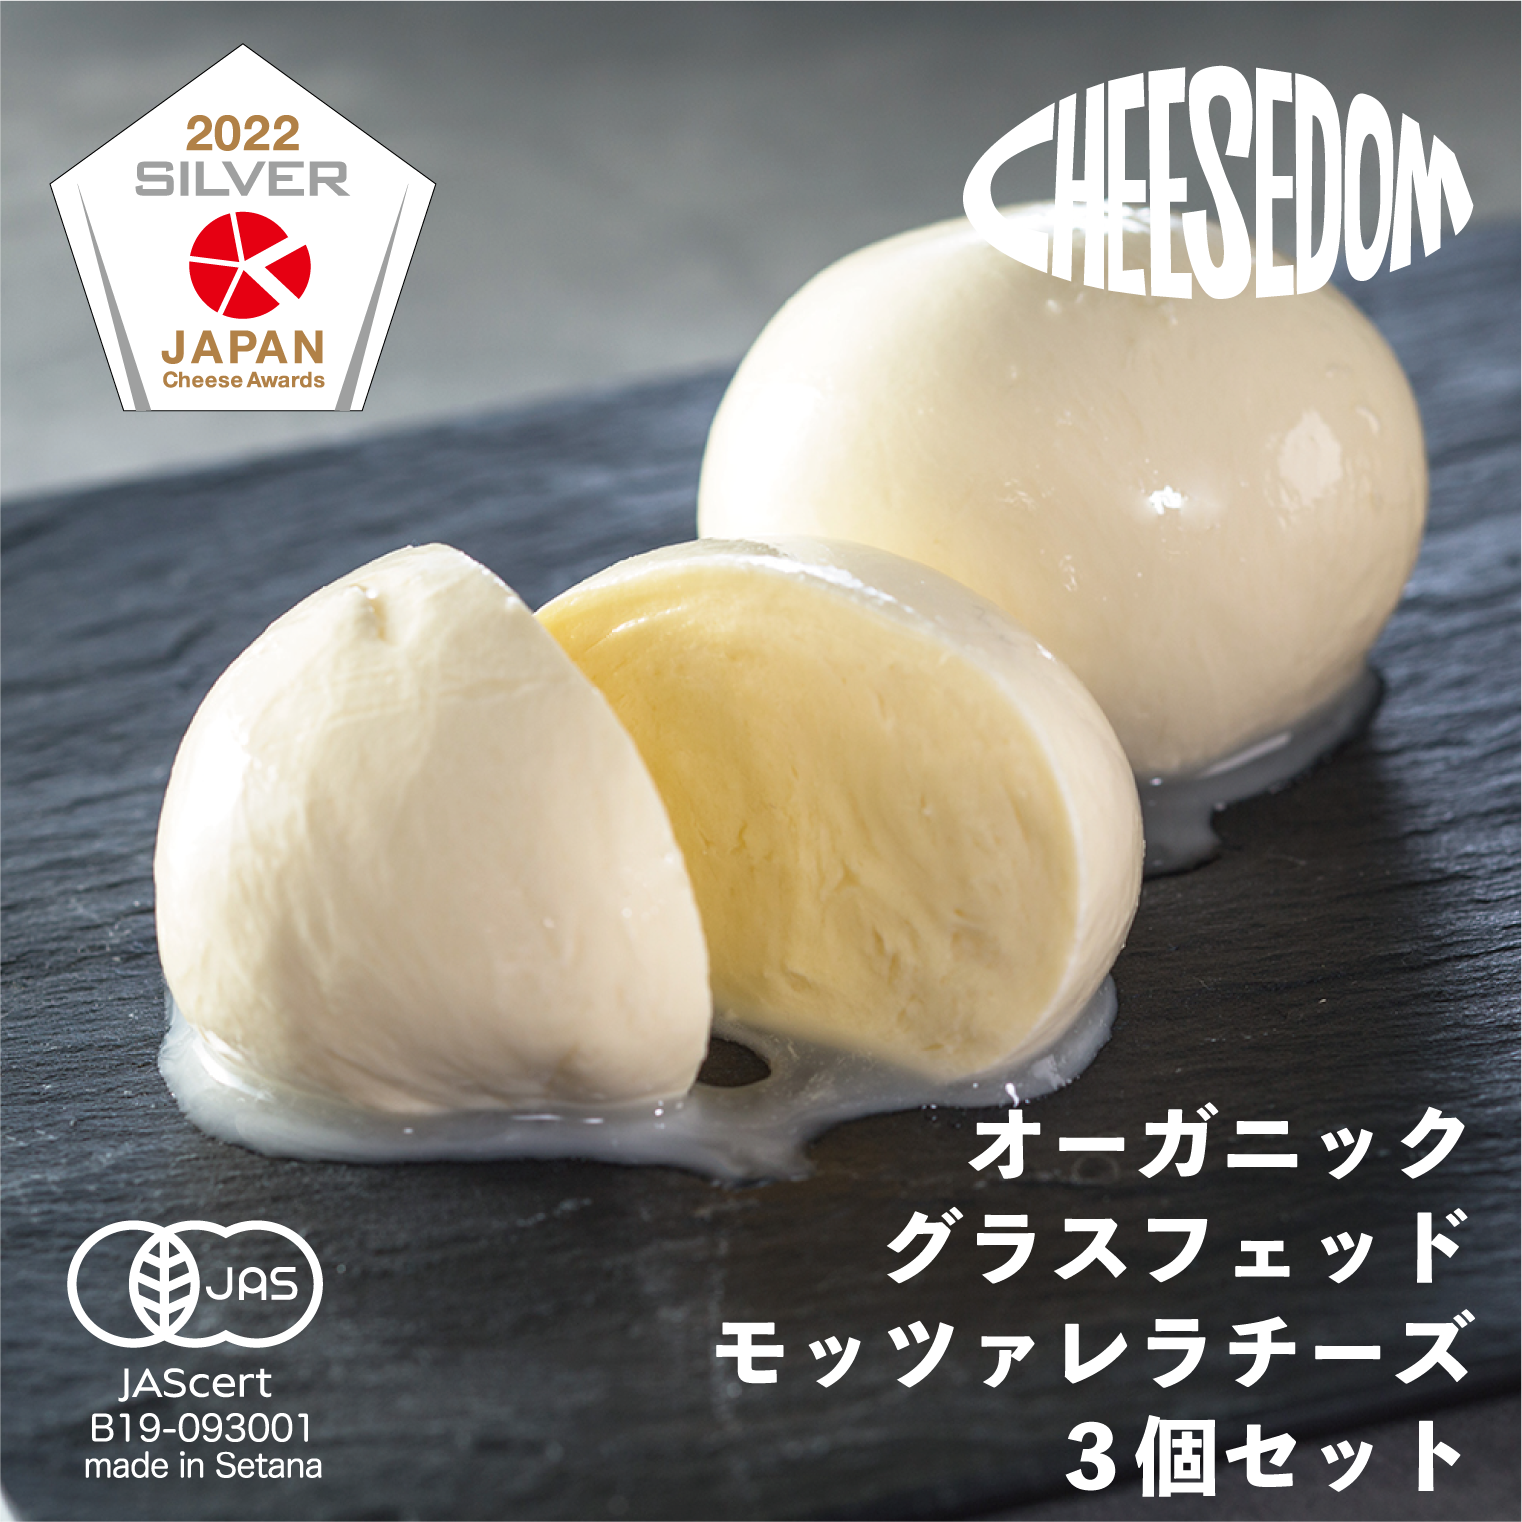 チーズダムのグラスフェッド・モッツァレラチーズ3個セット【CHEESEDOMのチーズ】